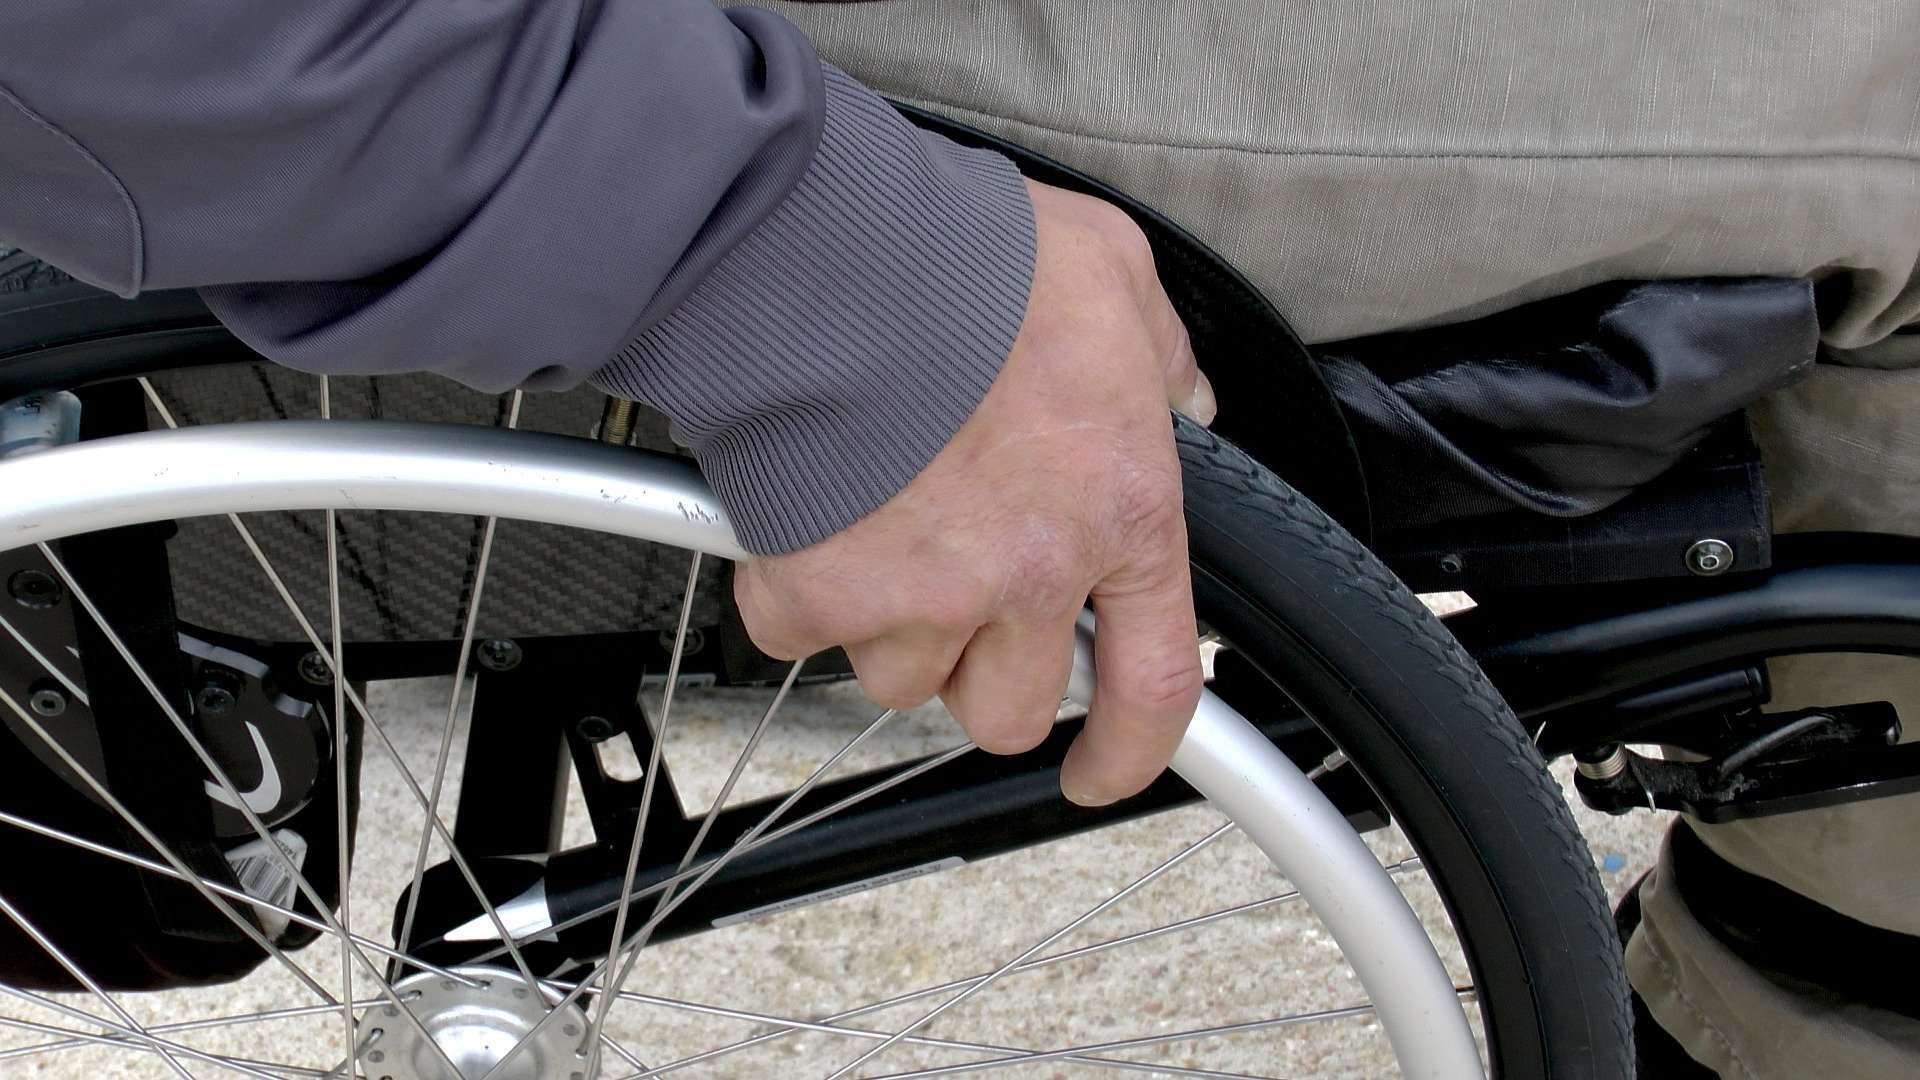 Termin ważności orzeczeń o niepełnosprawności i kart parkingowych wydłużony